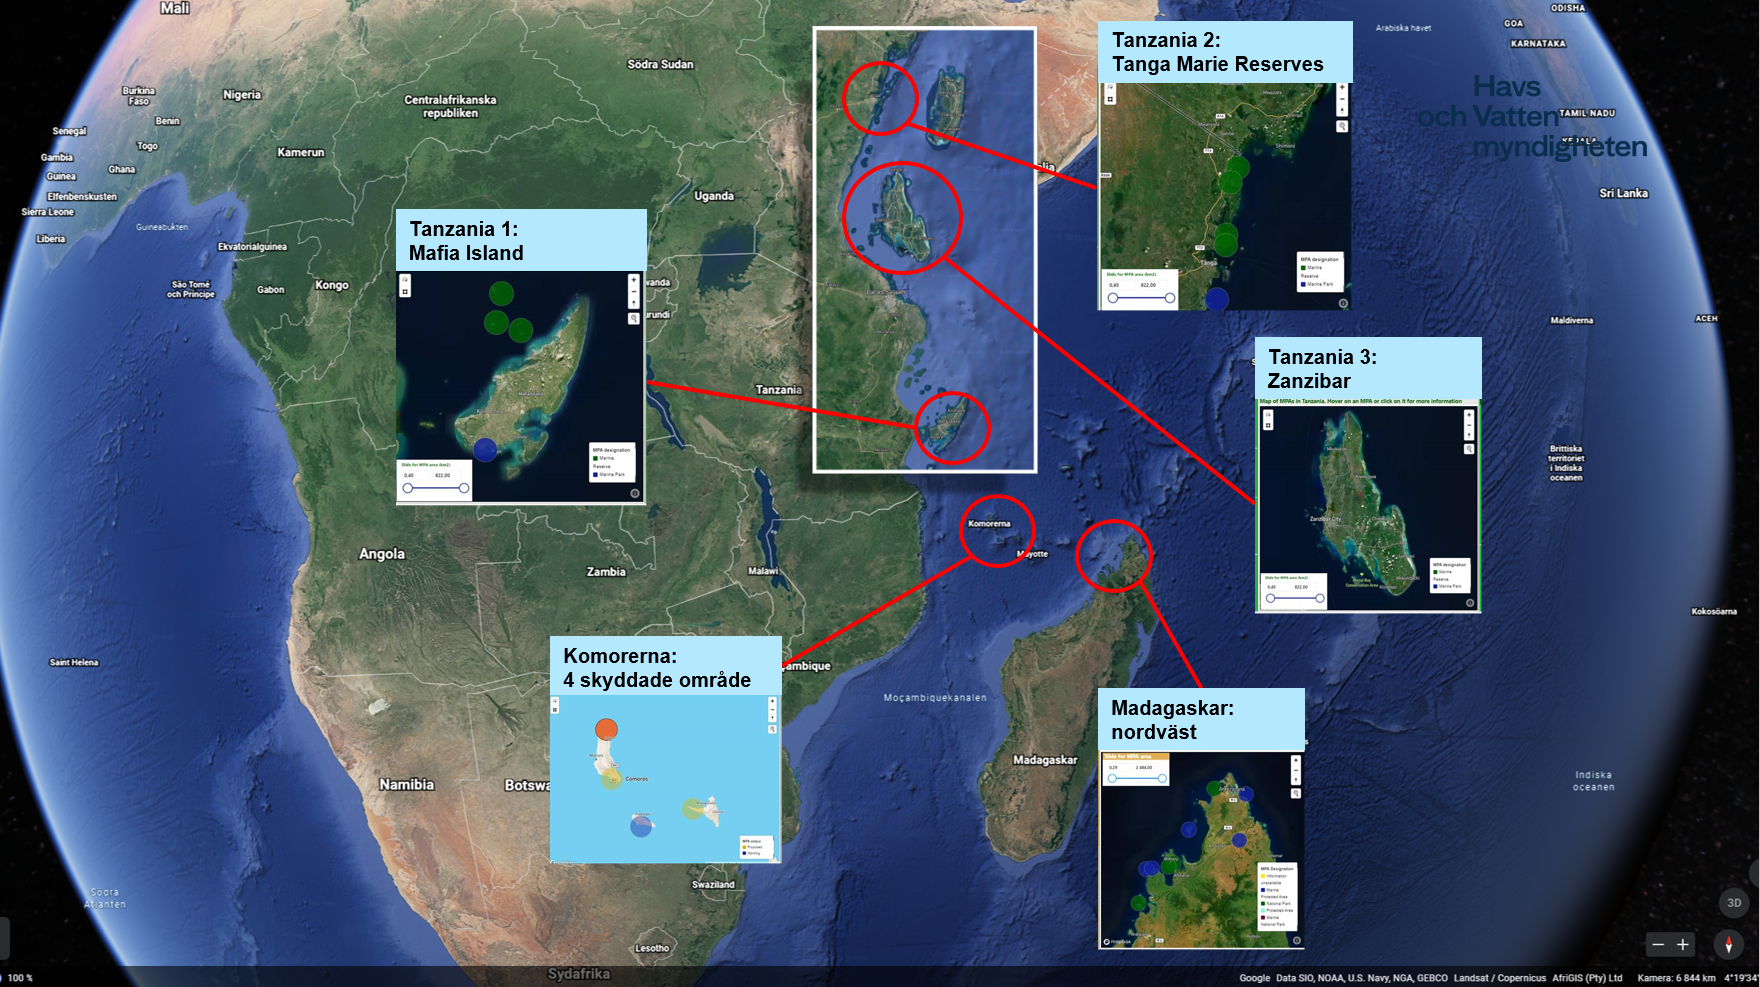 HaV utbildar fem team av förvaltare från marina skyddade områden på Madagaskar, Komorerna, Tanzania och Zanzibar digitalt. Du kan utforska östra Afrikas skyddade havsområden på Nairobikonventionens karta